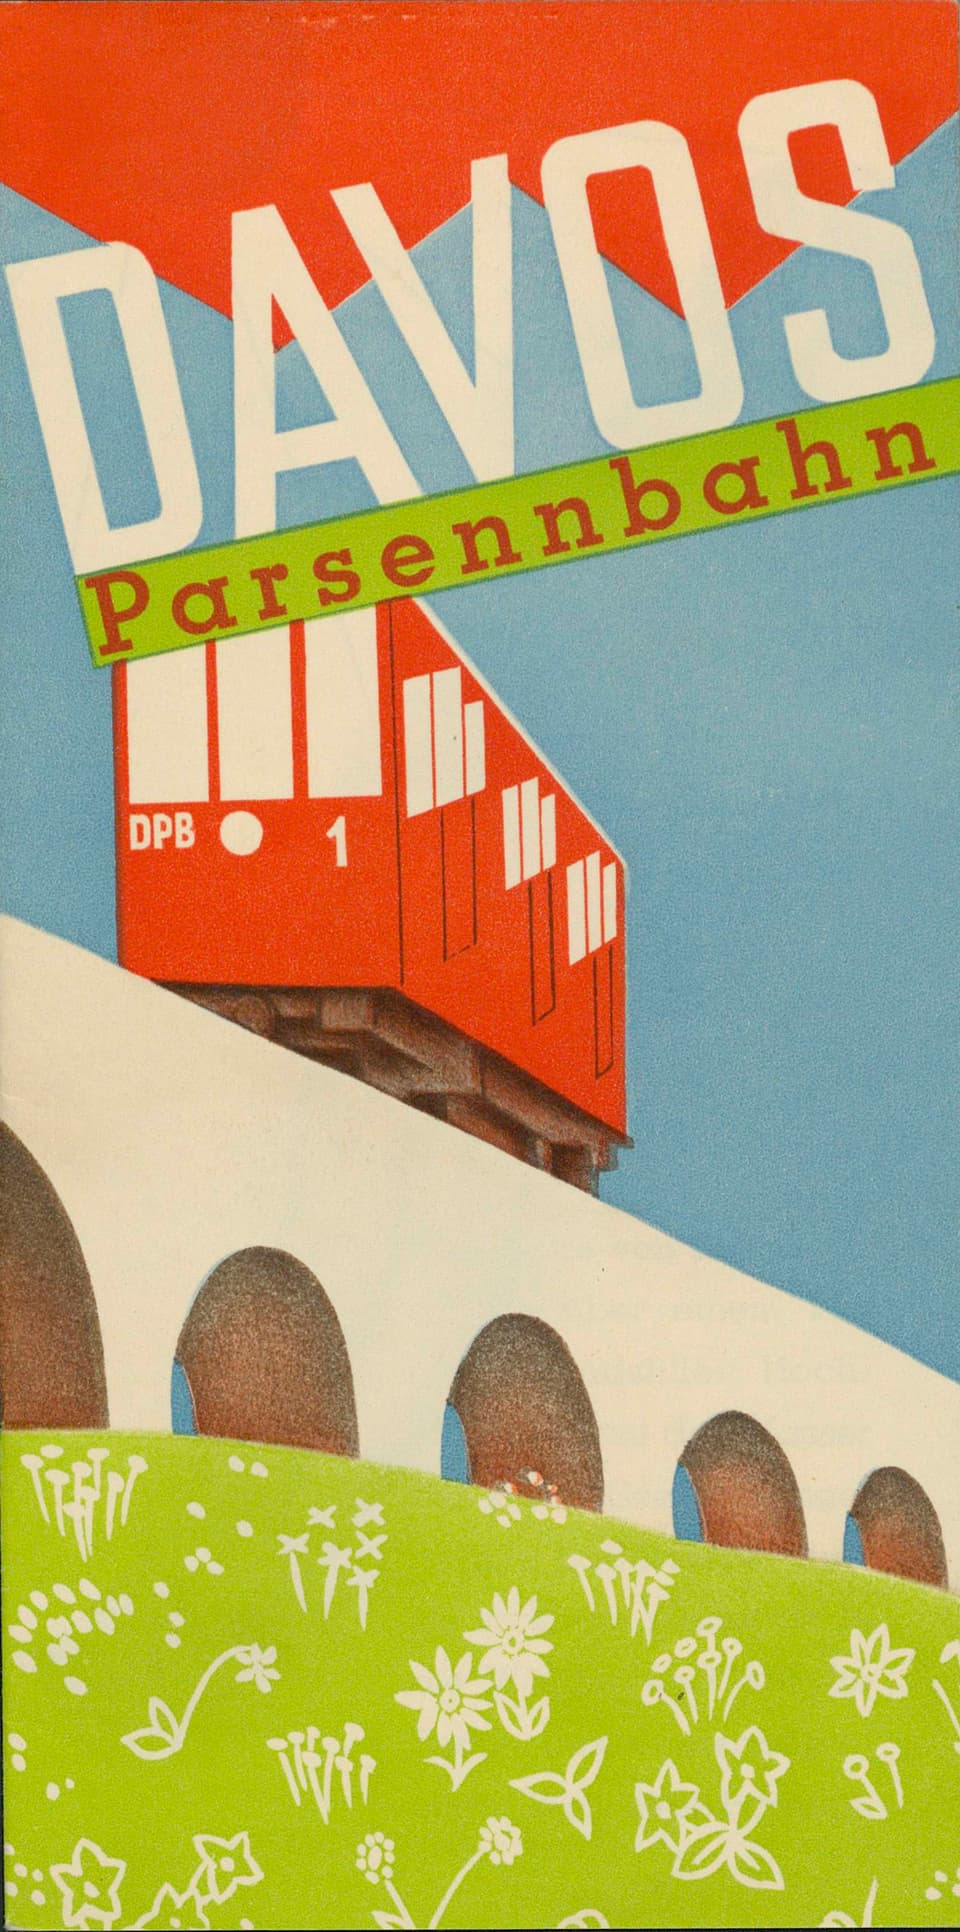 Faltprospekt und Tourismuswerbung Davos – Parsennbahn.